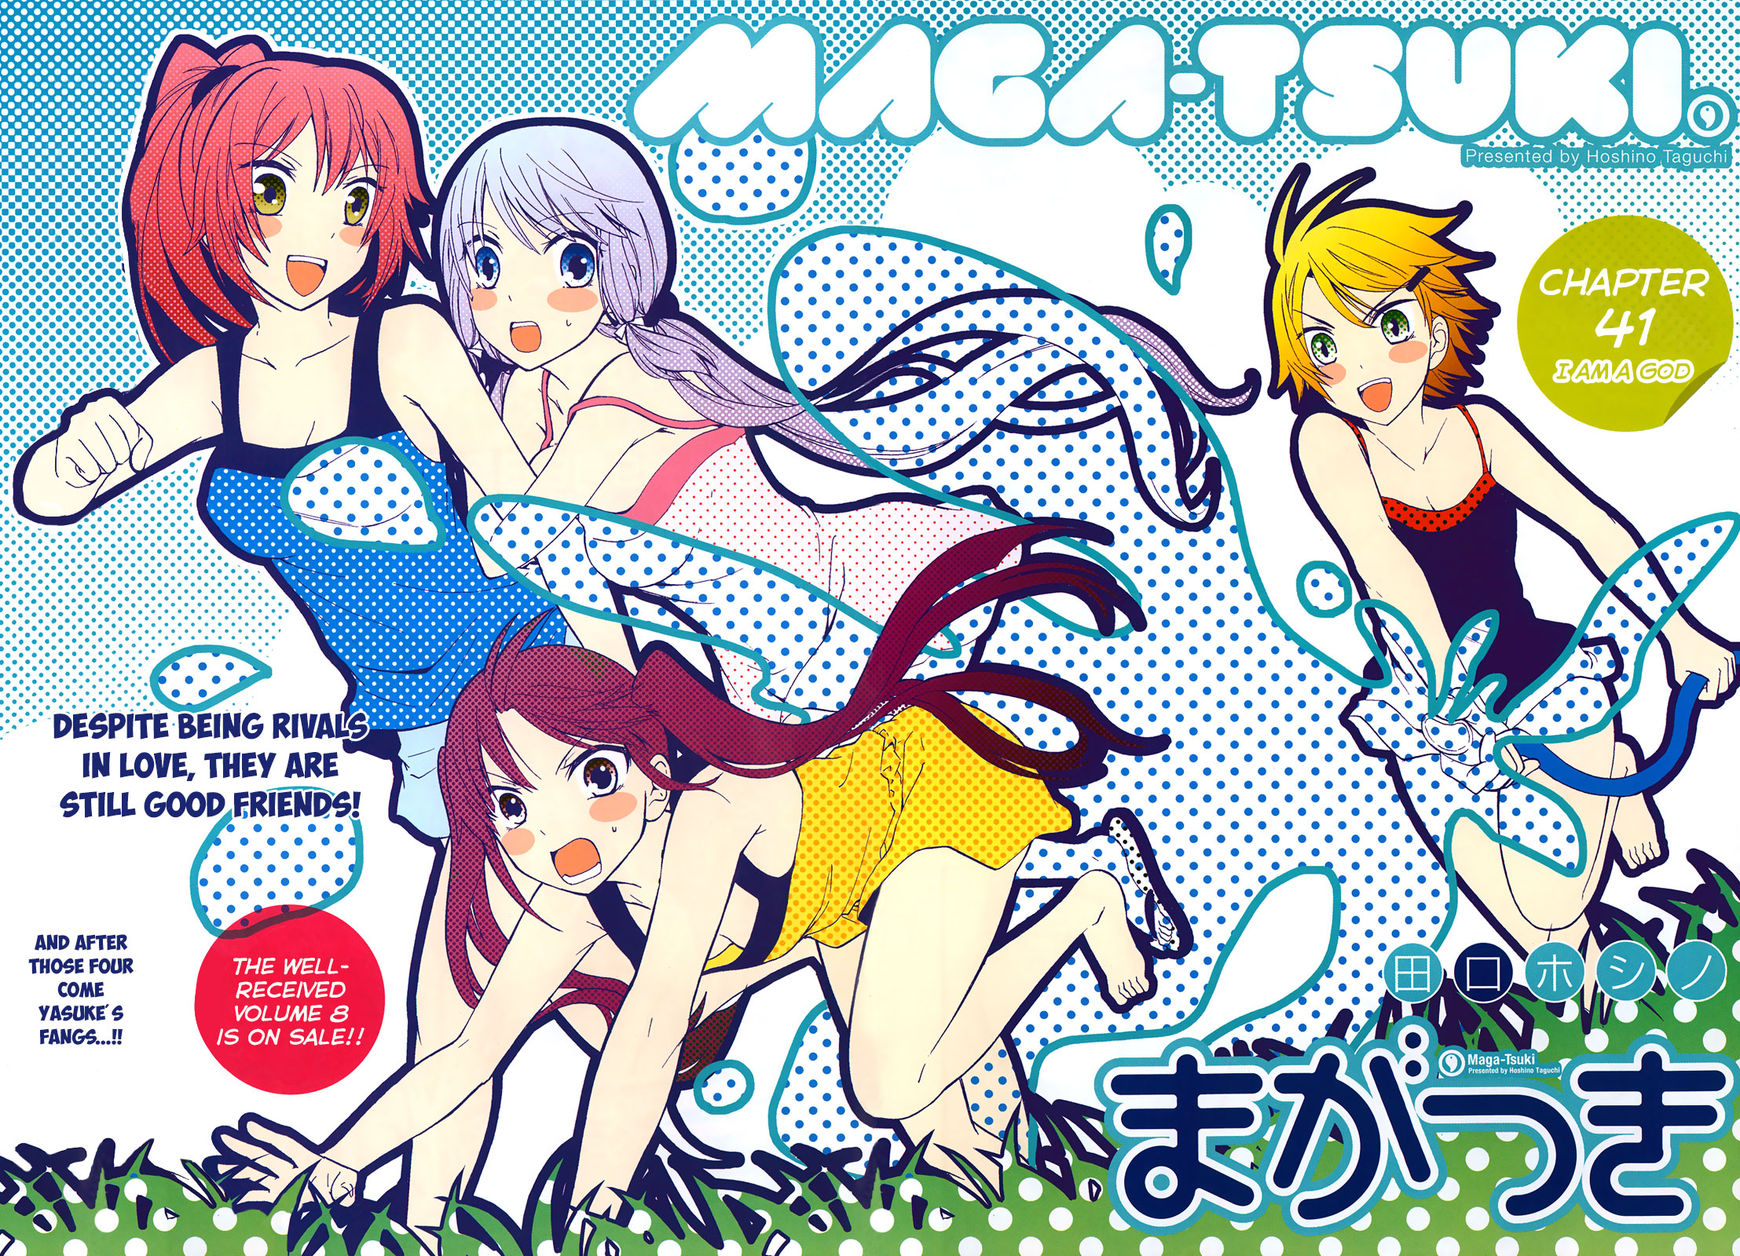 Maga-Tsuki 41